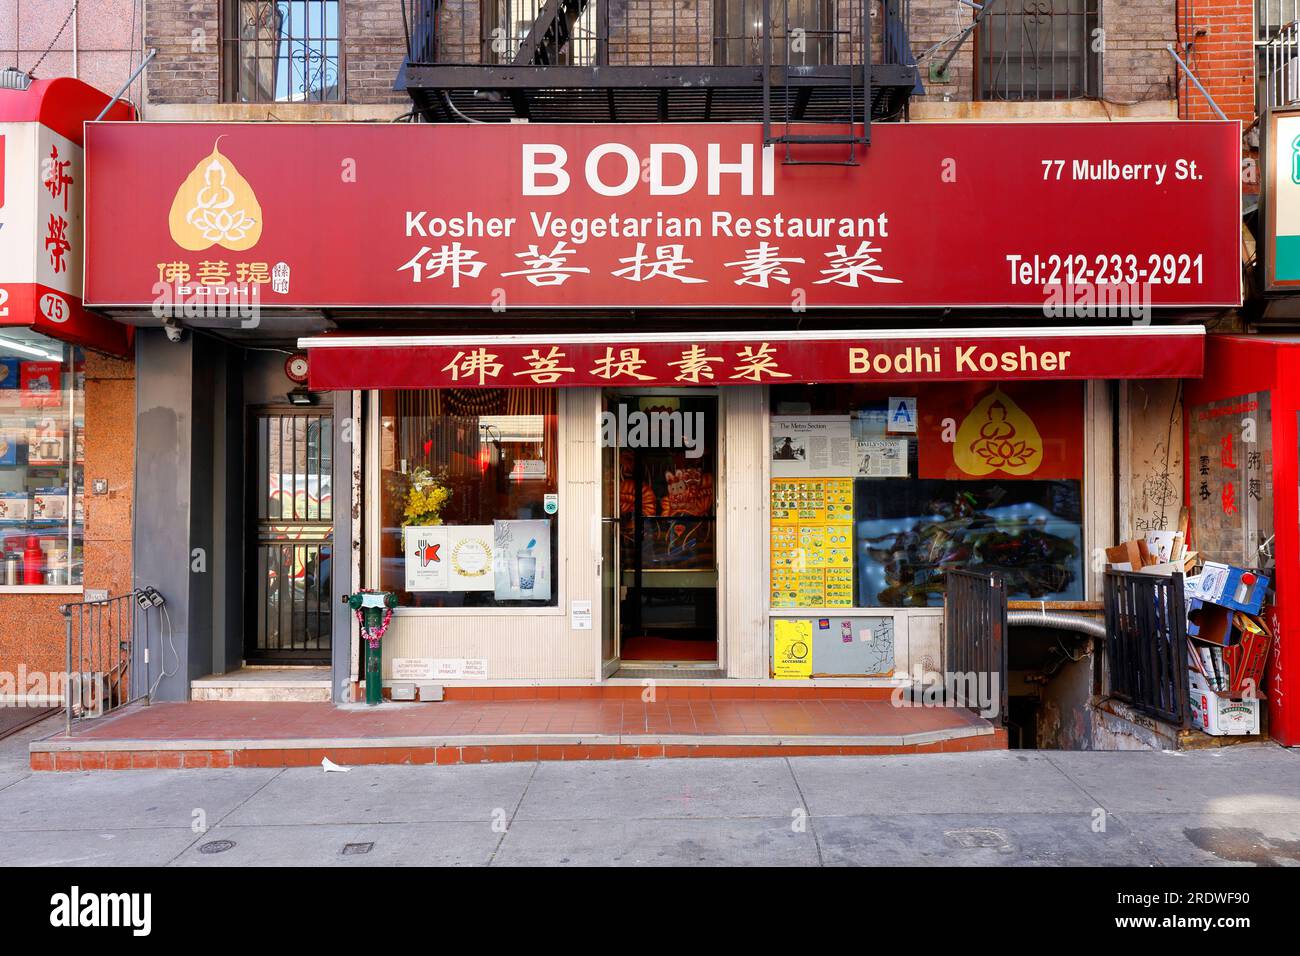 Bodhi Kosher Vegetarian Restaurant, 77 Mulberry St, New York, NYC photo de la vitrine d'un restaurant chinois végétalien kasher dans le quartier chinois de Manhattan. Banque D'Images